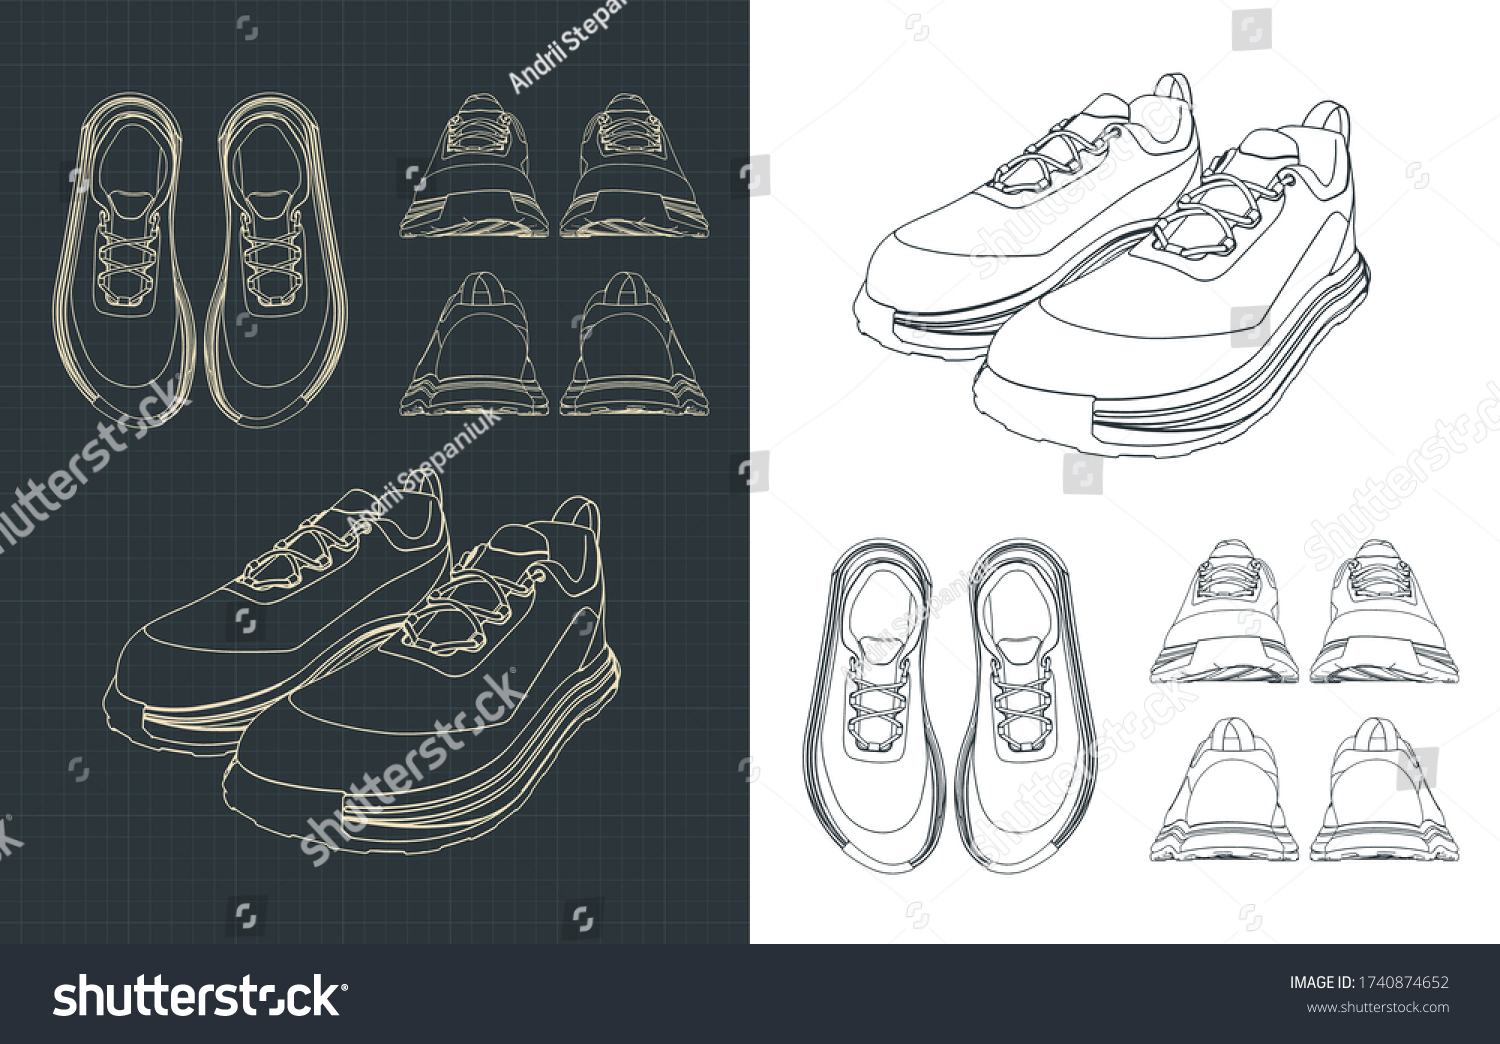 Shoes blueprint Images, Stock Photos & Vectors | Shutterstock